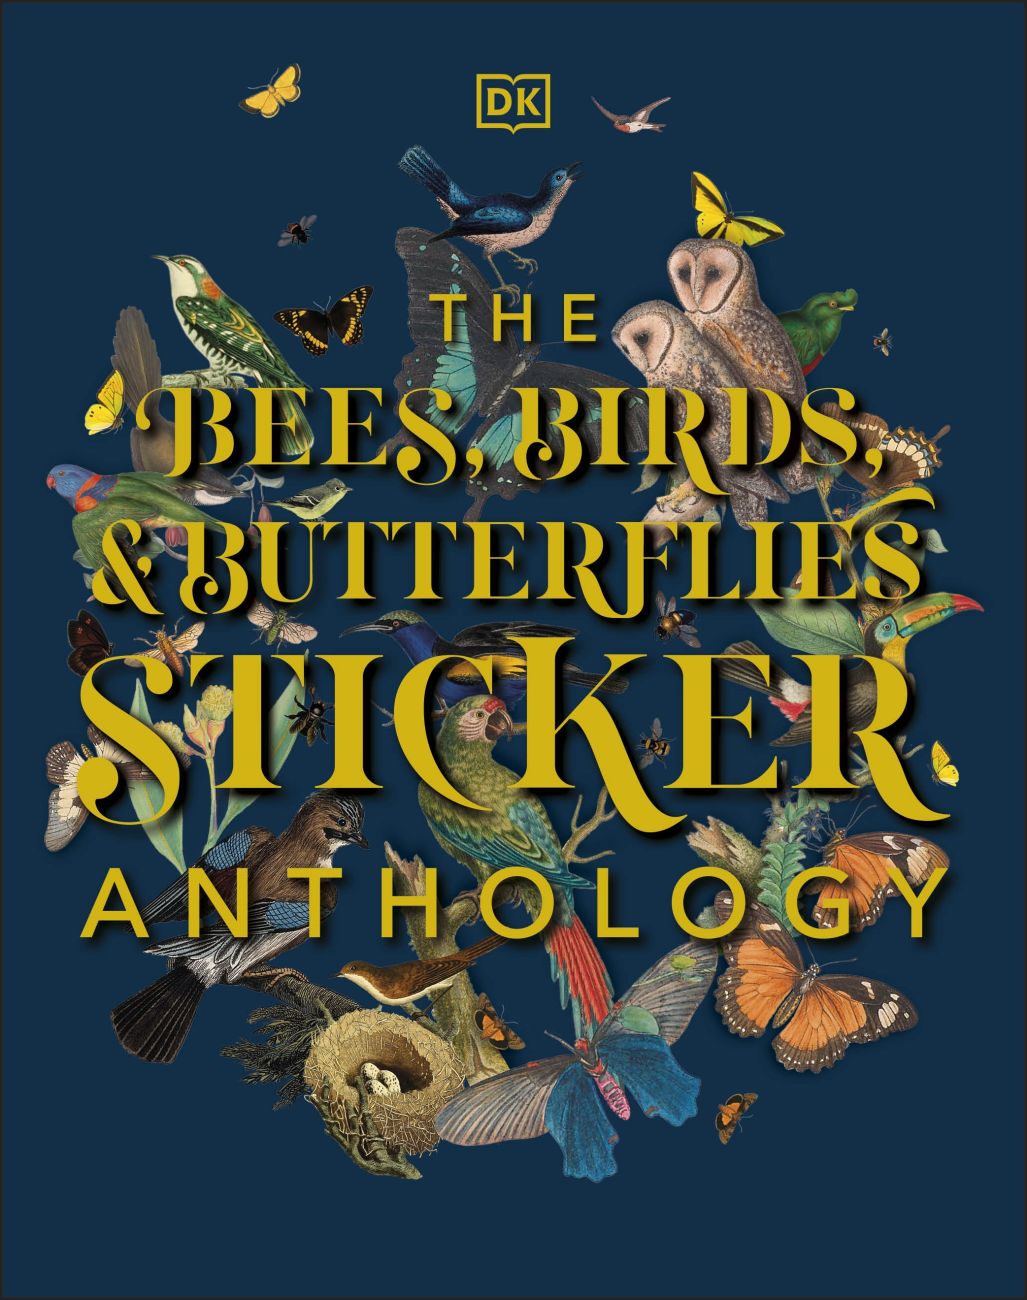 Bees, Birds & Butterflies Sticker Anthology